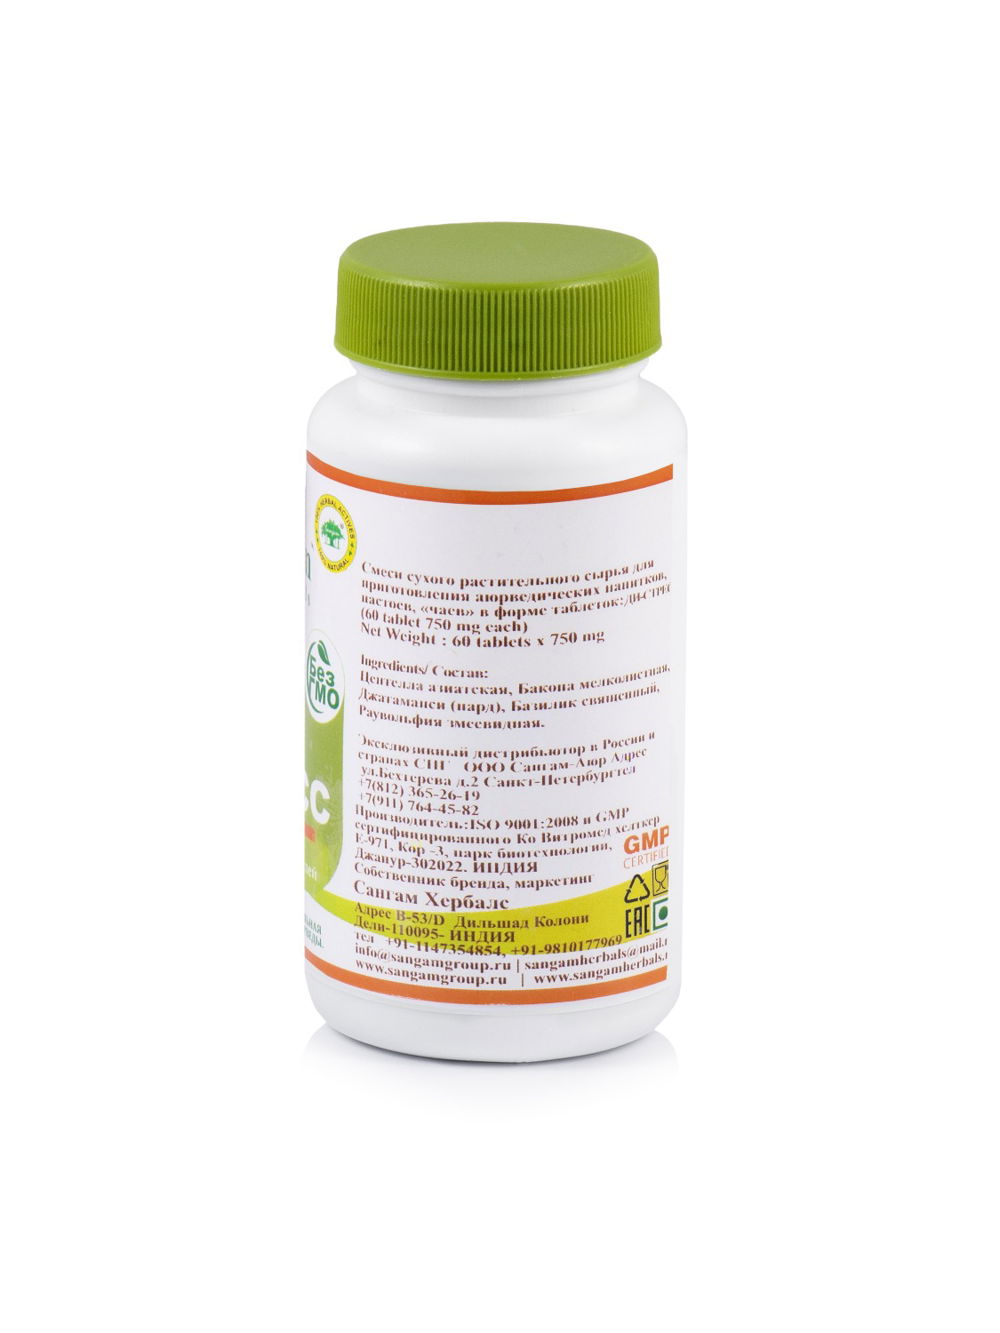 Ди-Стресс Sangam Herbals (60 таблеток), Ди-Стресс